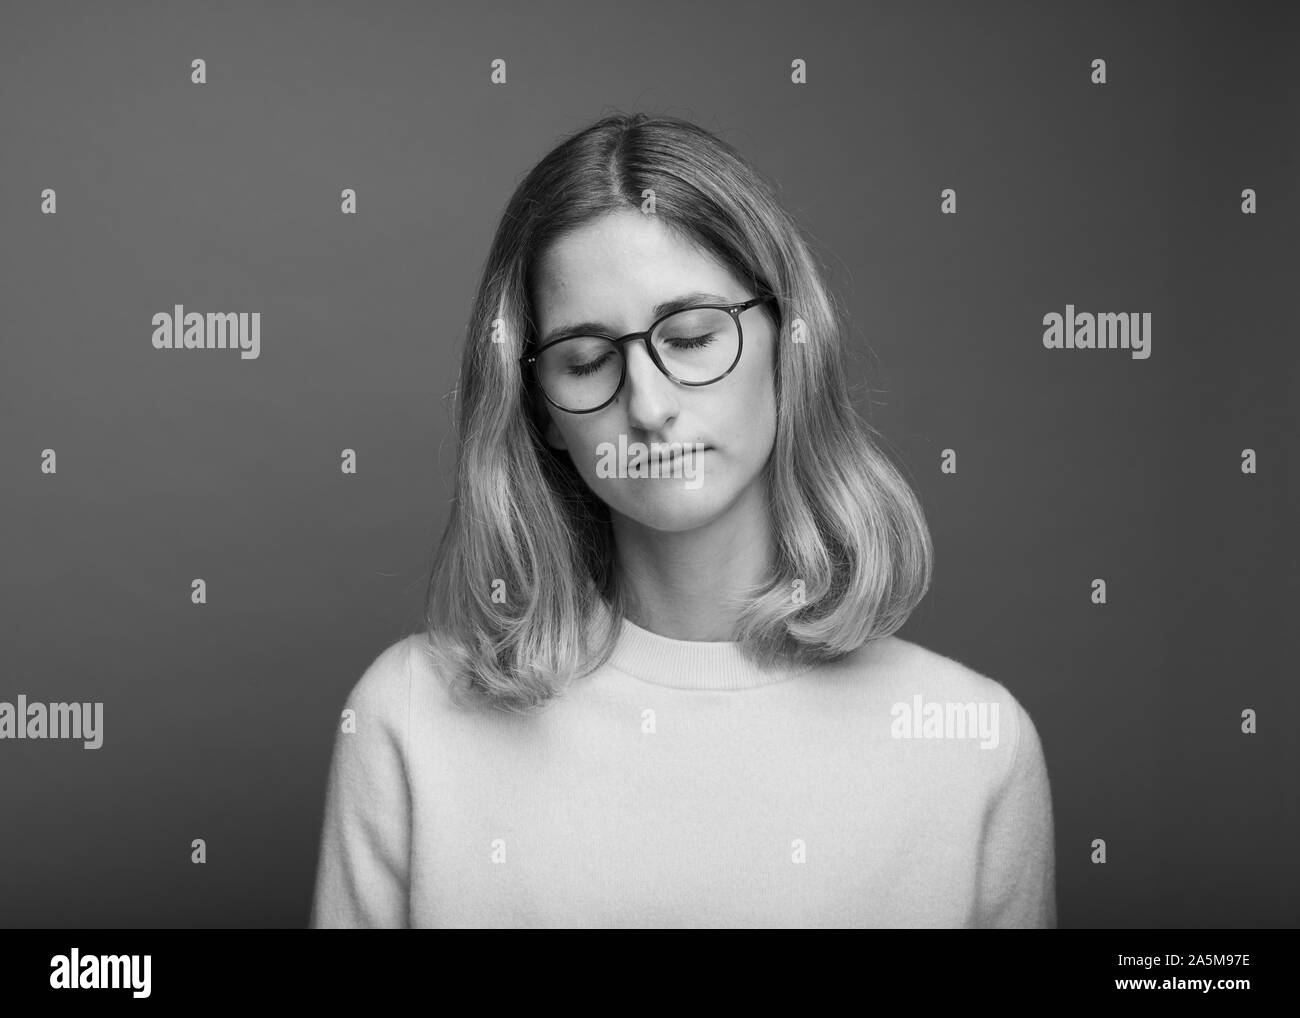 Foto de estudio en blanco y negro de mujer con gafas y con los ojos cerrados Foto de stock